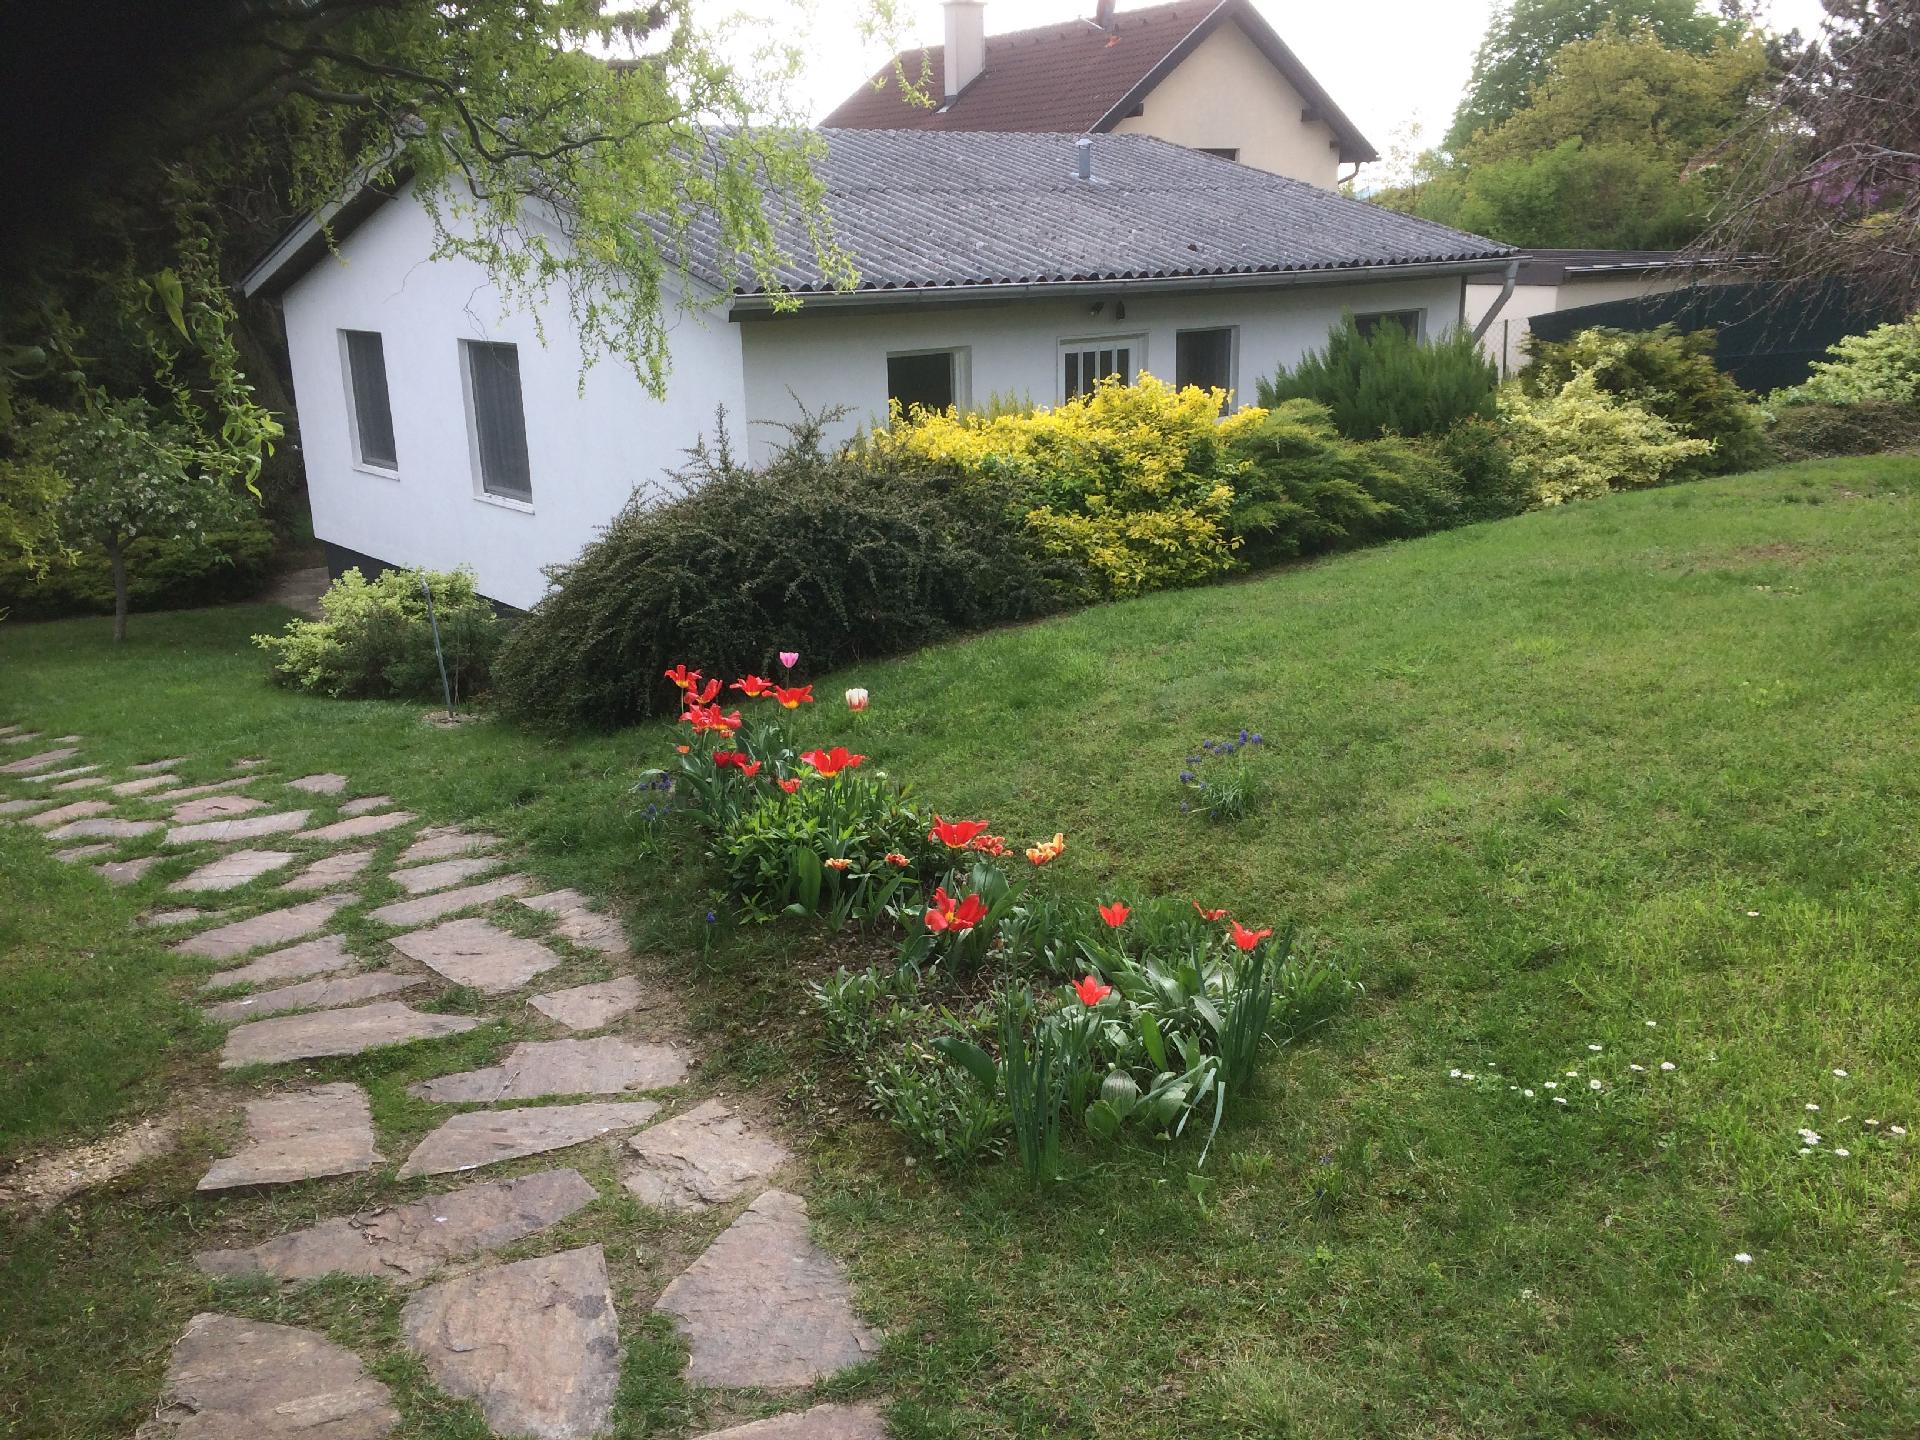  Ferienhaus in naturreicher Umgebung für erho   Klosterneuburg